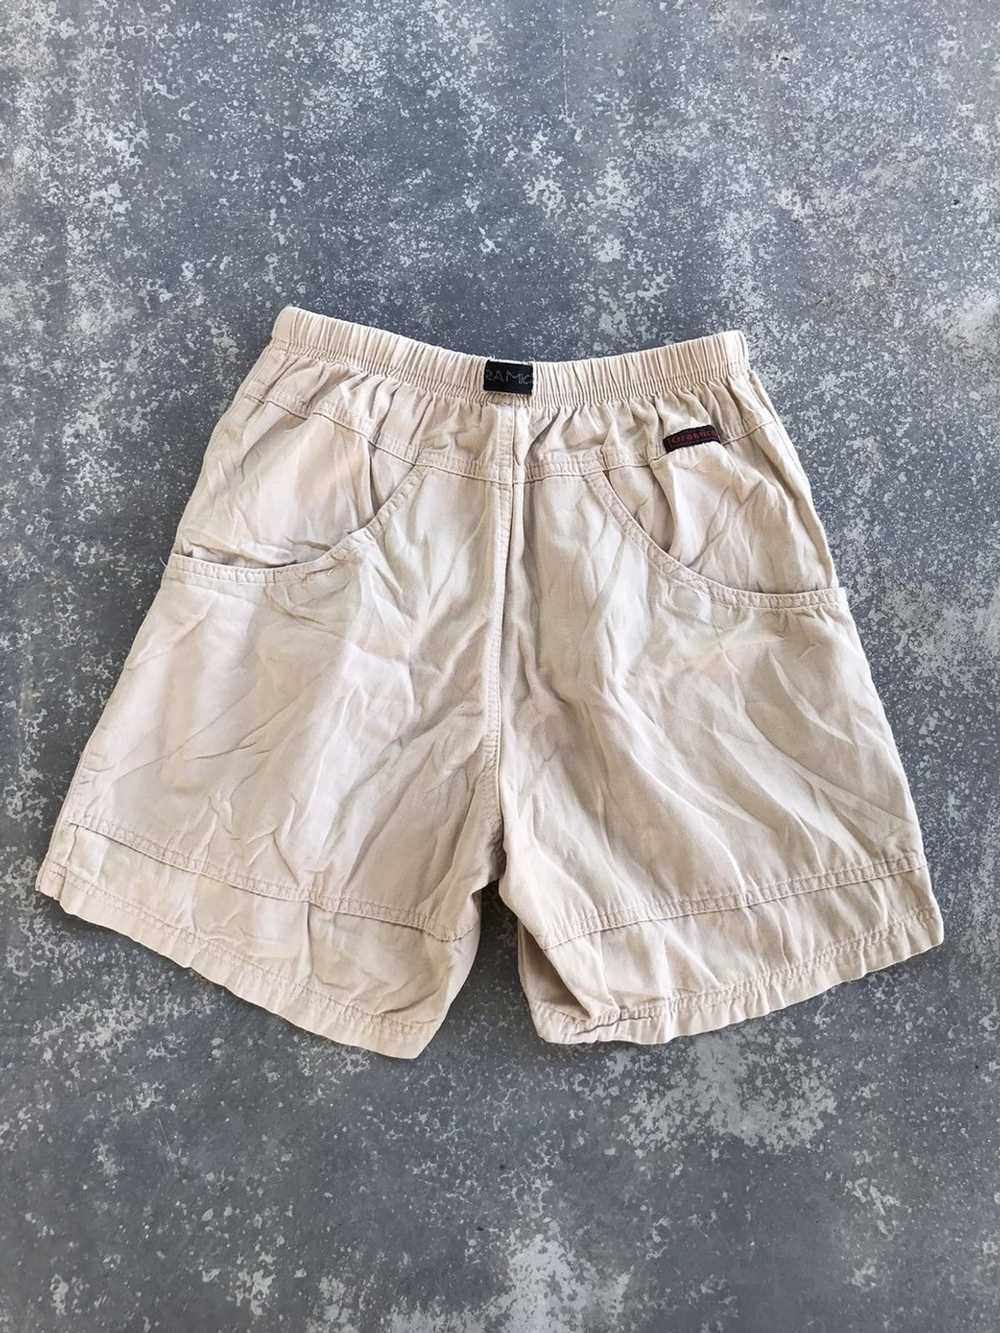 Gramicci Vintage Gramicci hiking shorts pants - Gem